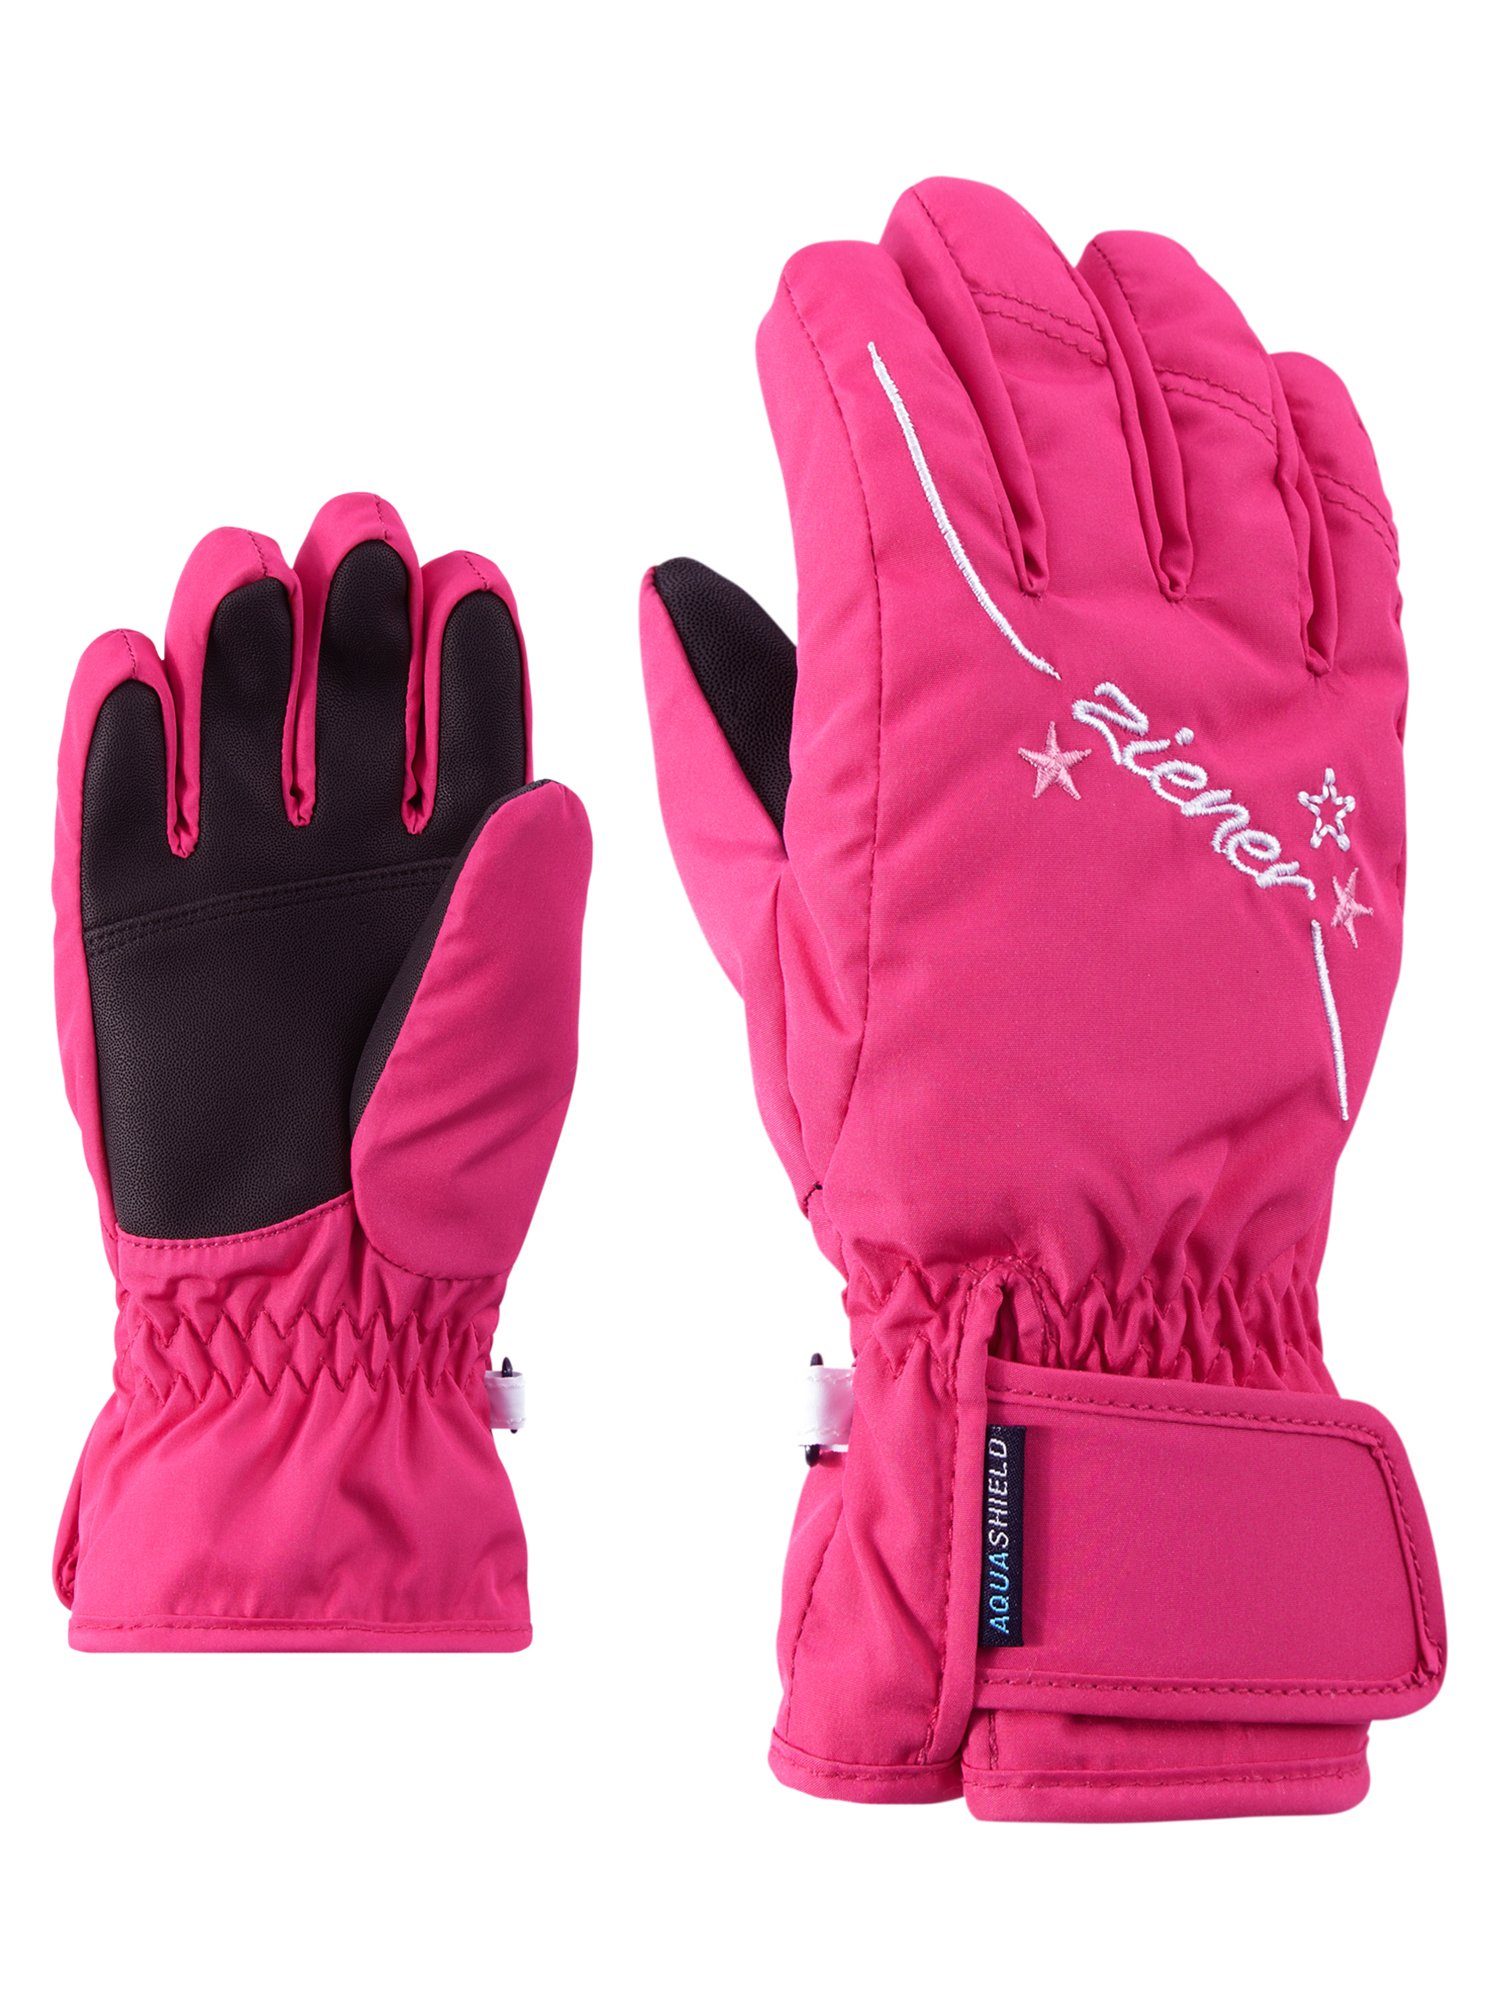 OTTO Ski Ski | Handschuhe Rosa kaufen Handschuhe » Pinke